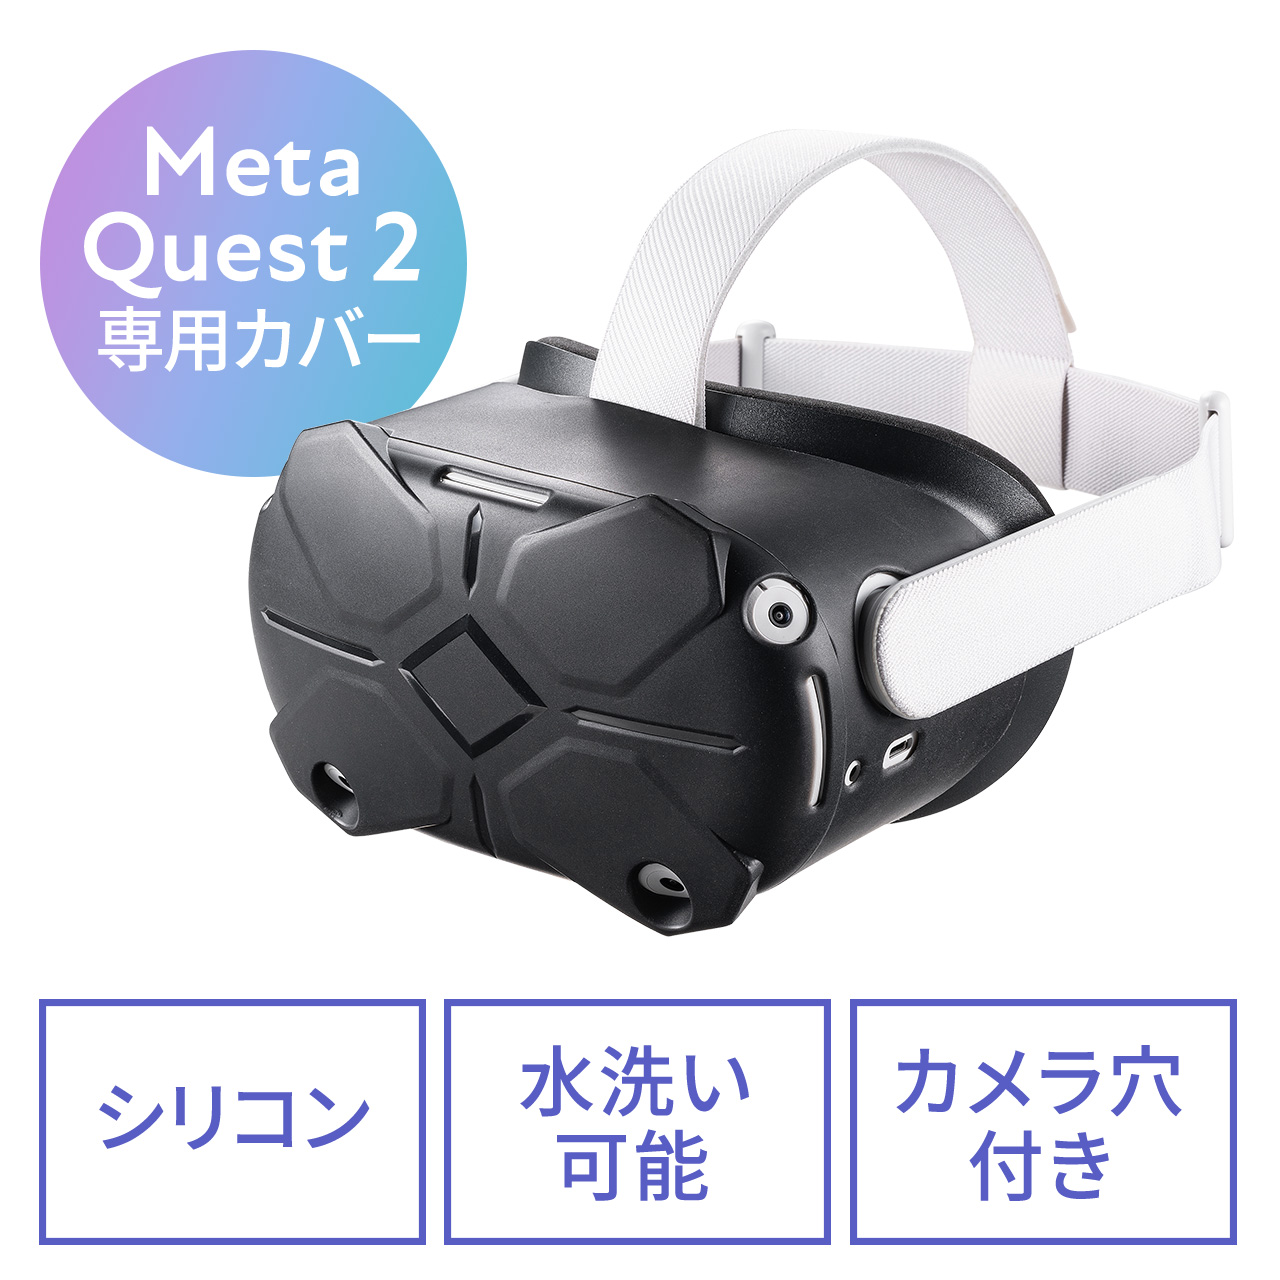 週間売れ筋 Oculus (Meta) Quest 2 256GB 各種アクセサリー付き | www